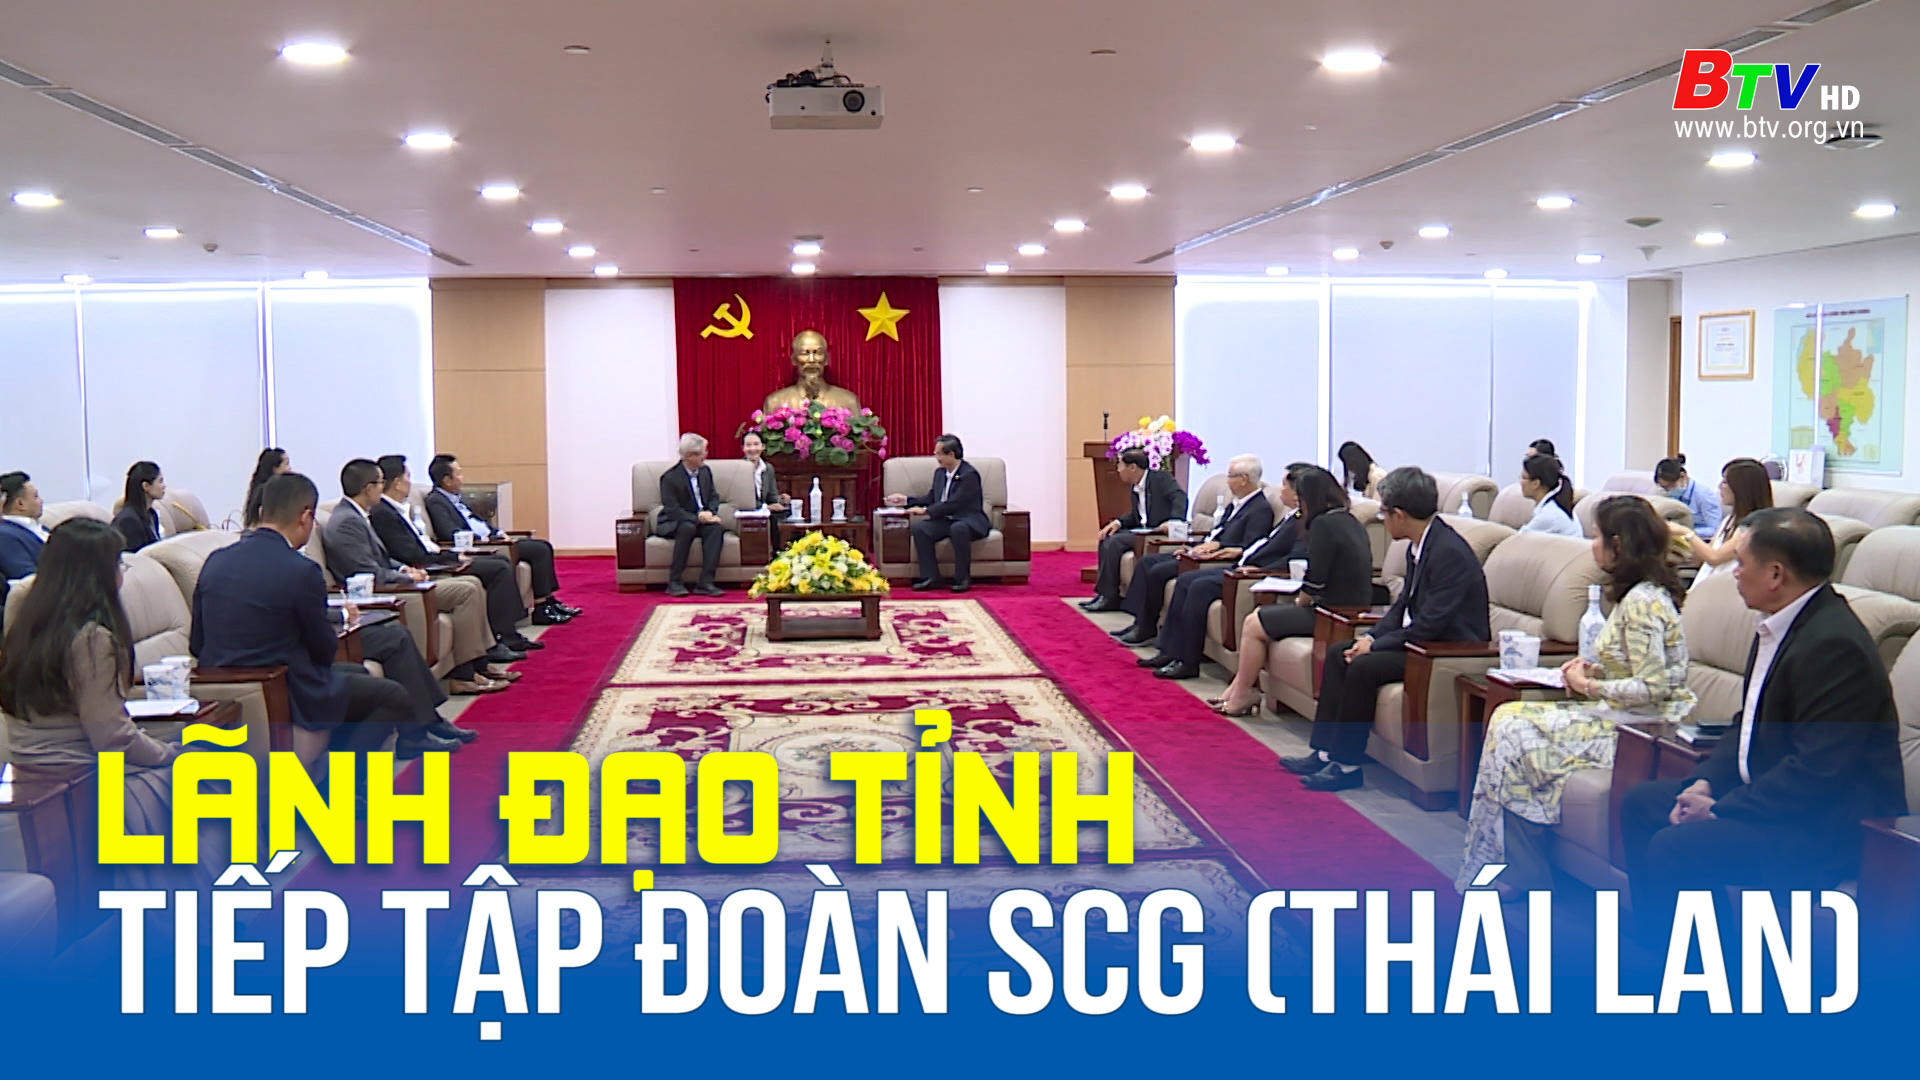 Lãnh đạo tỉnh tiếp tập đoàn SCG (Thái Lan)